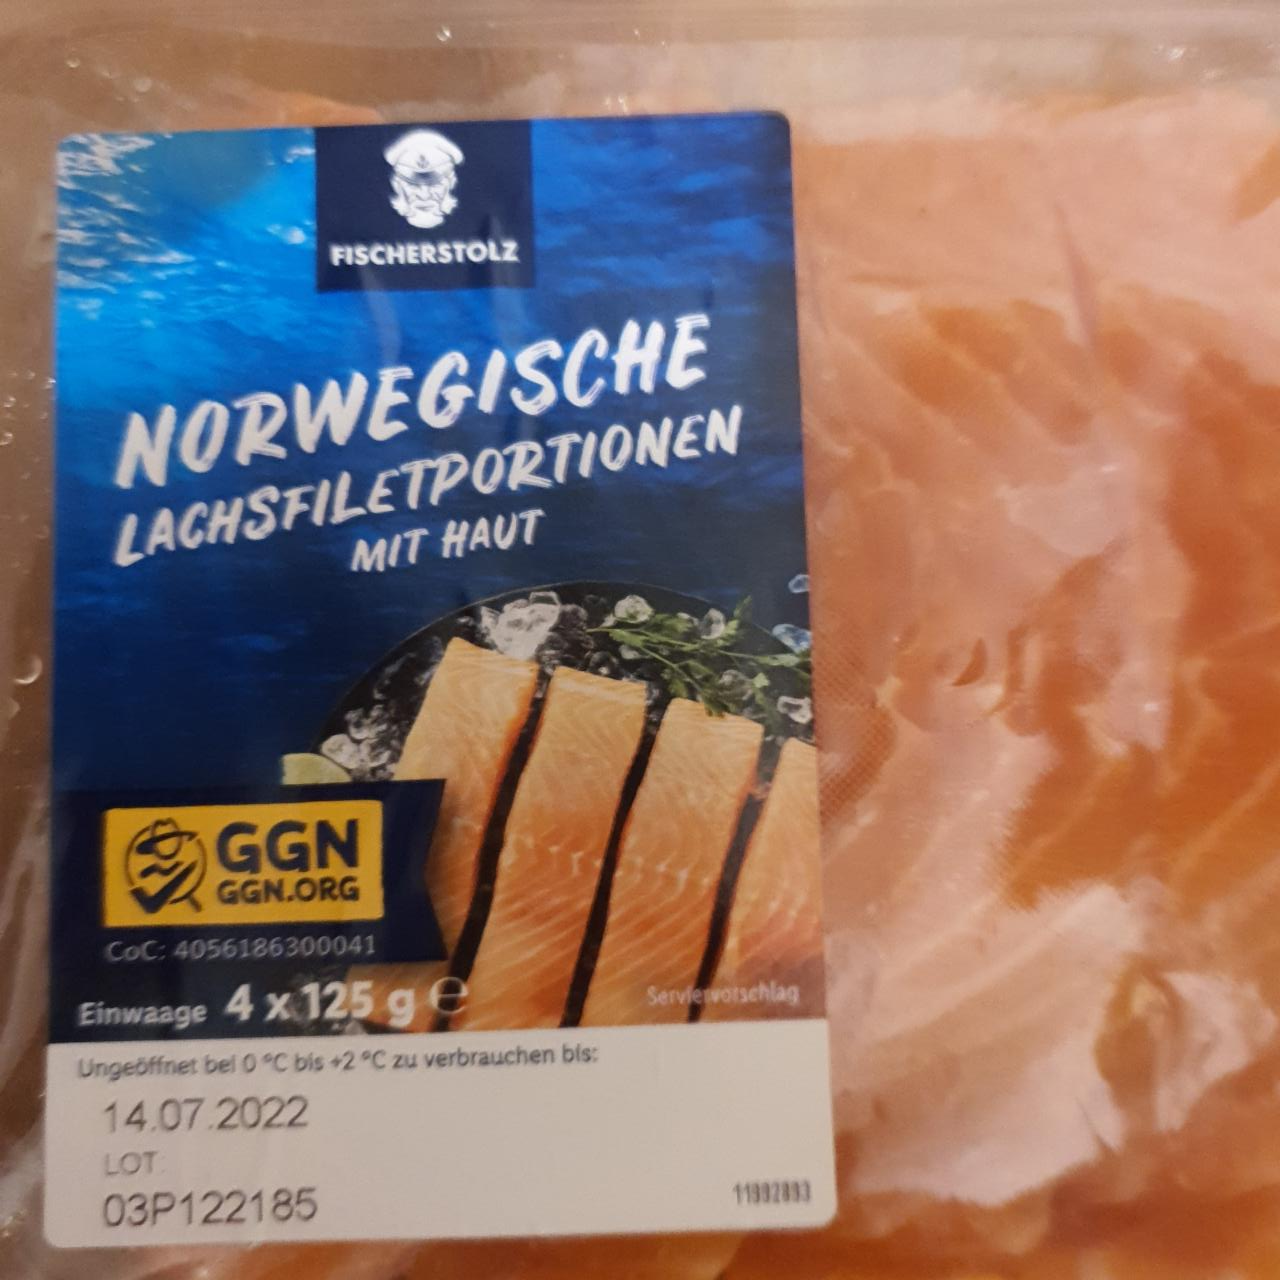 Fotografie - Norwegische LachsfiletPortionen mit haut Fischerstolz